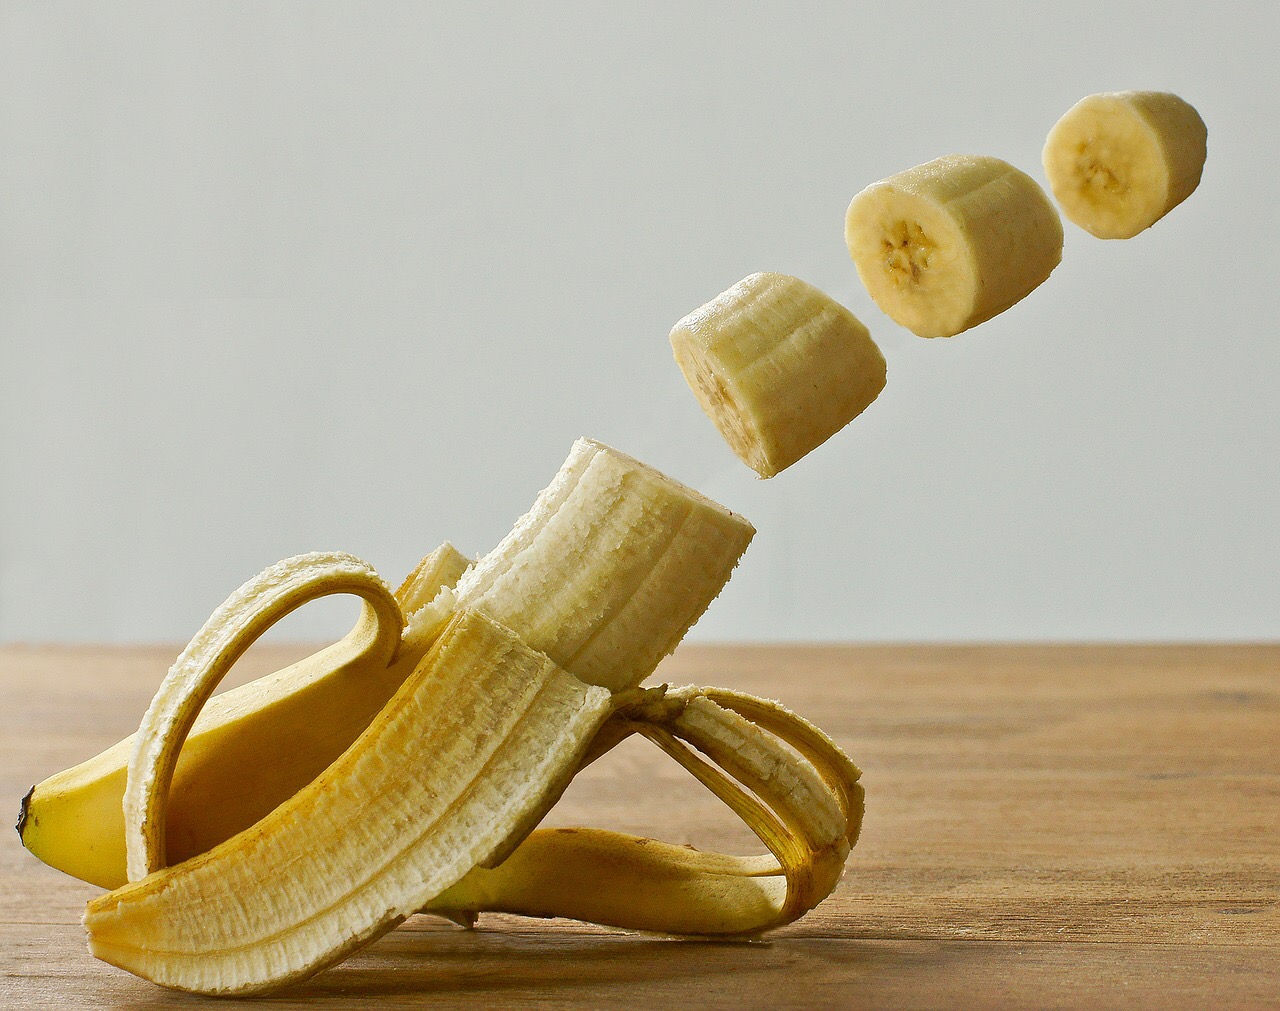 A banana cut into pieces